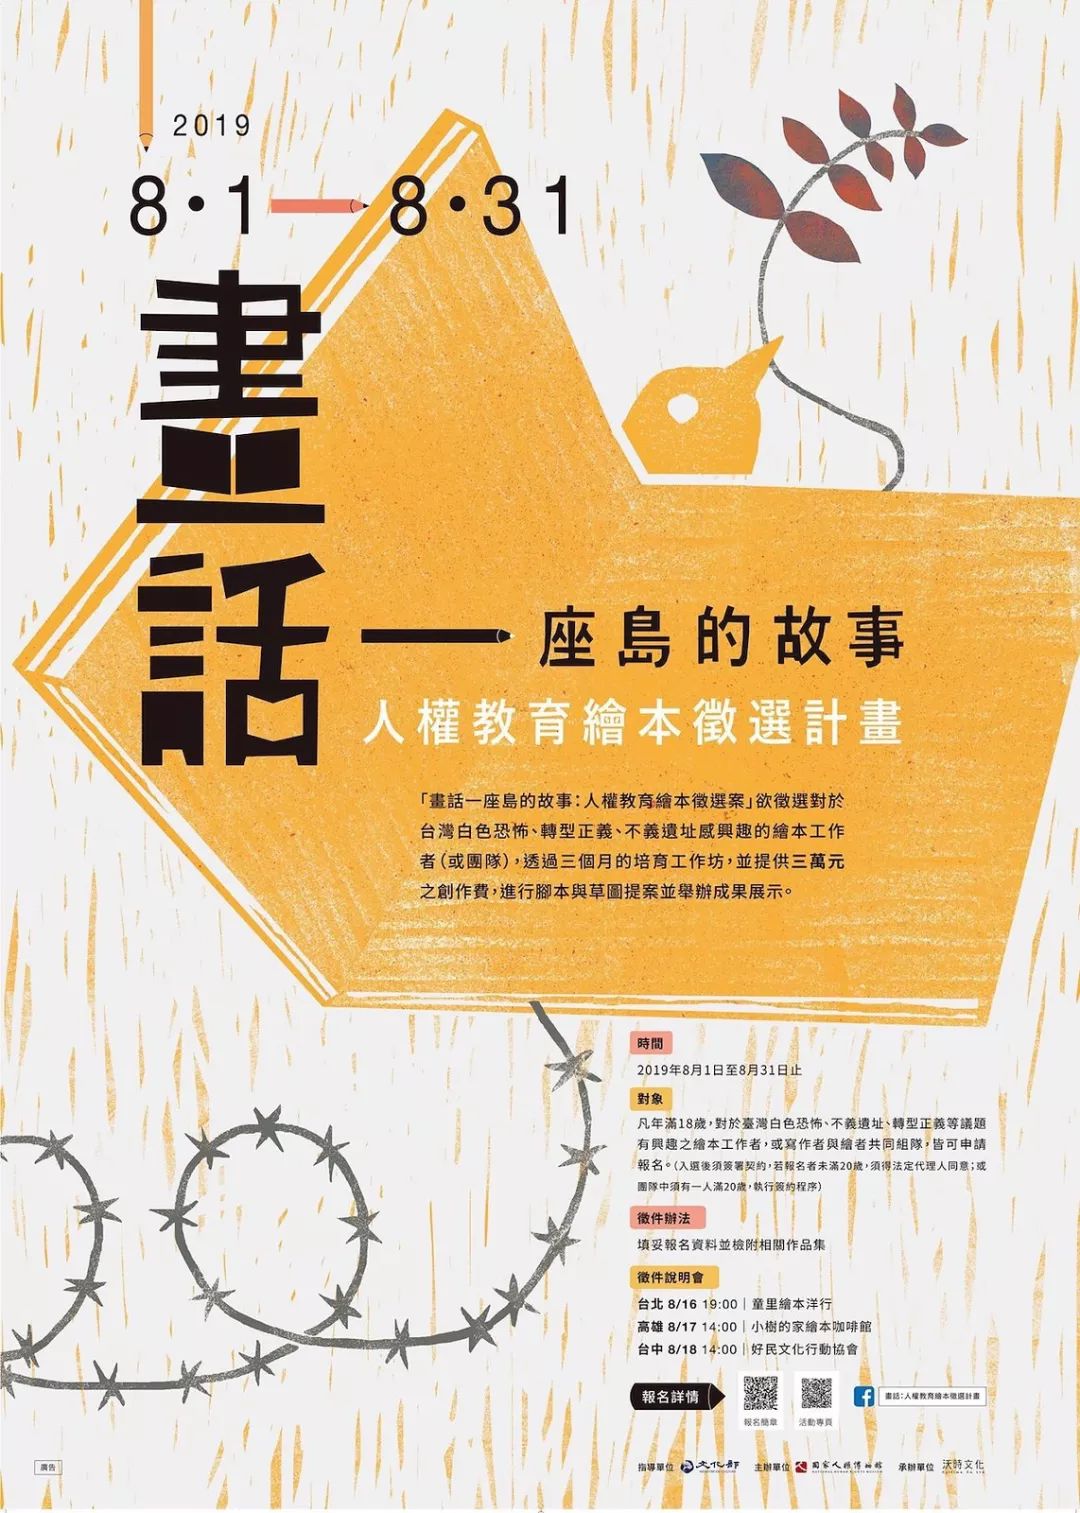 30款台湾海报设计作品